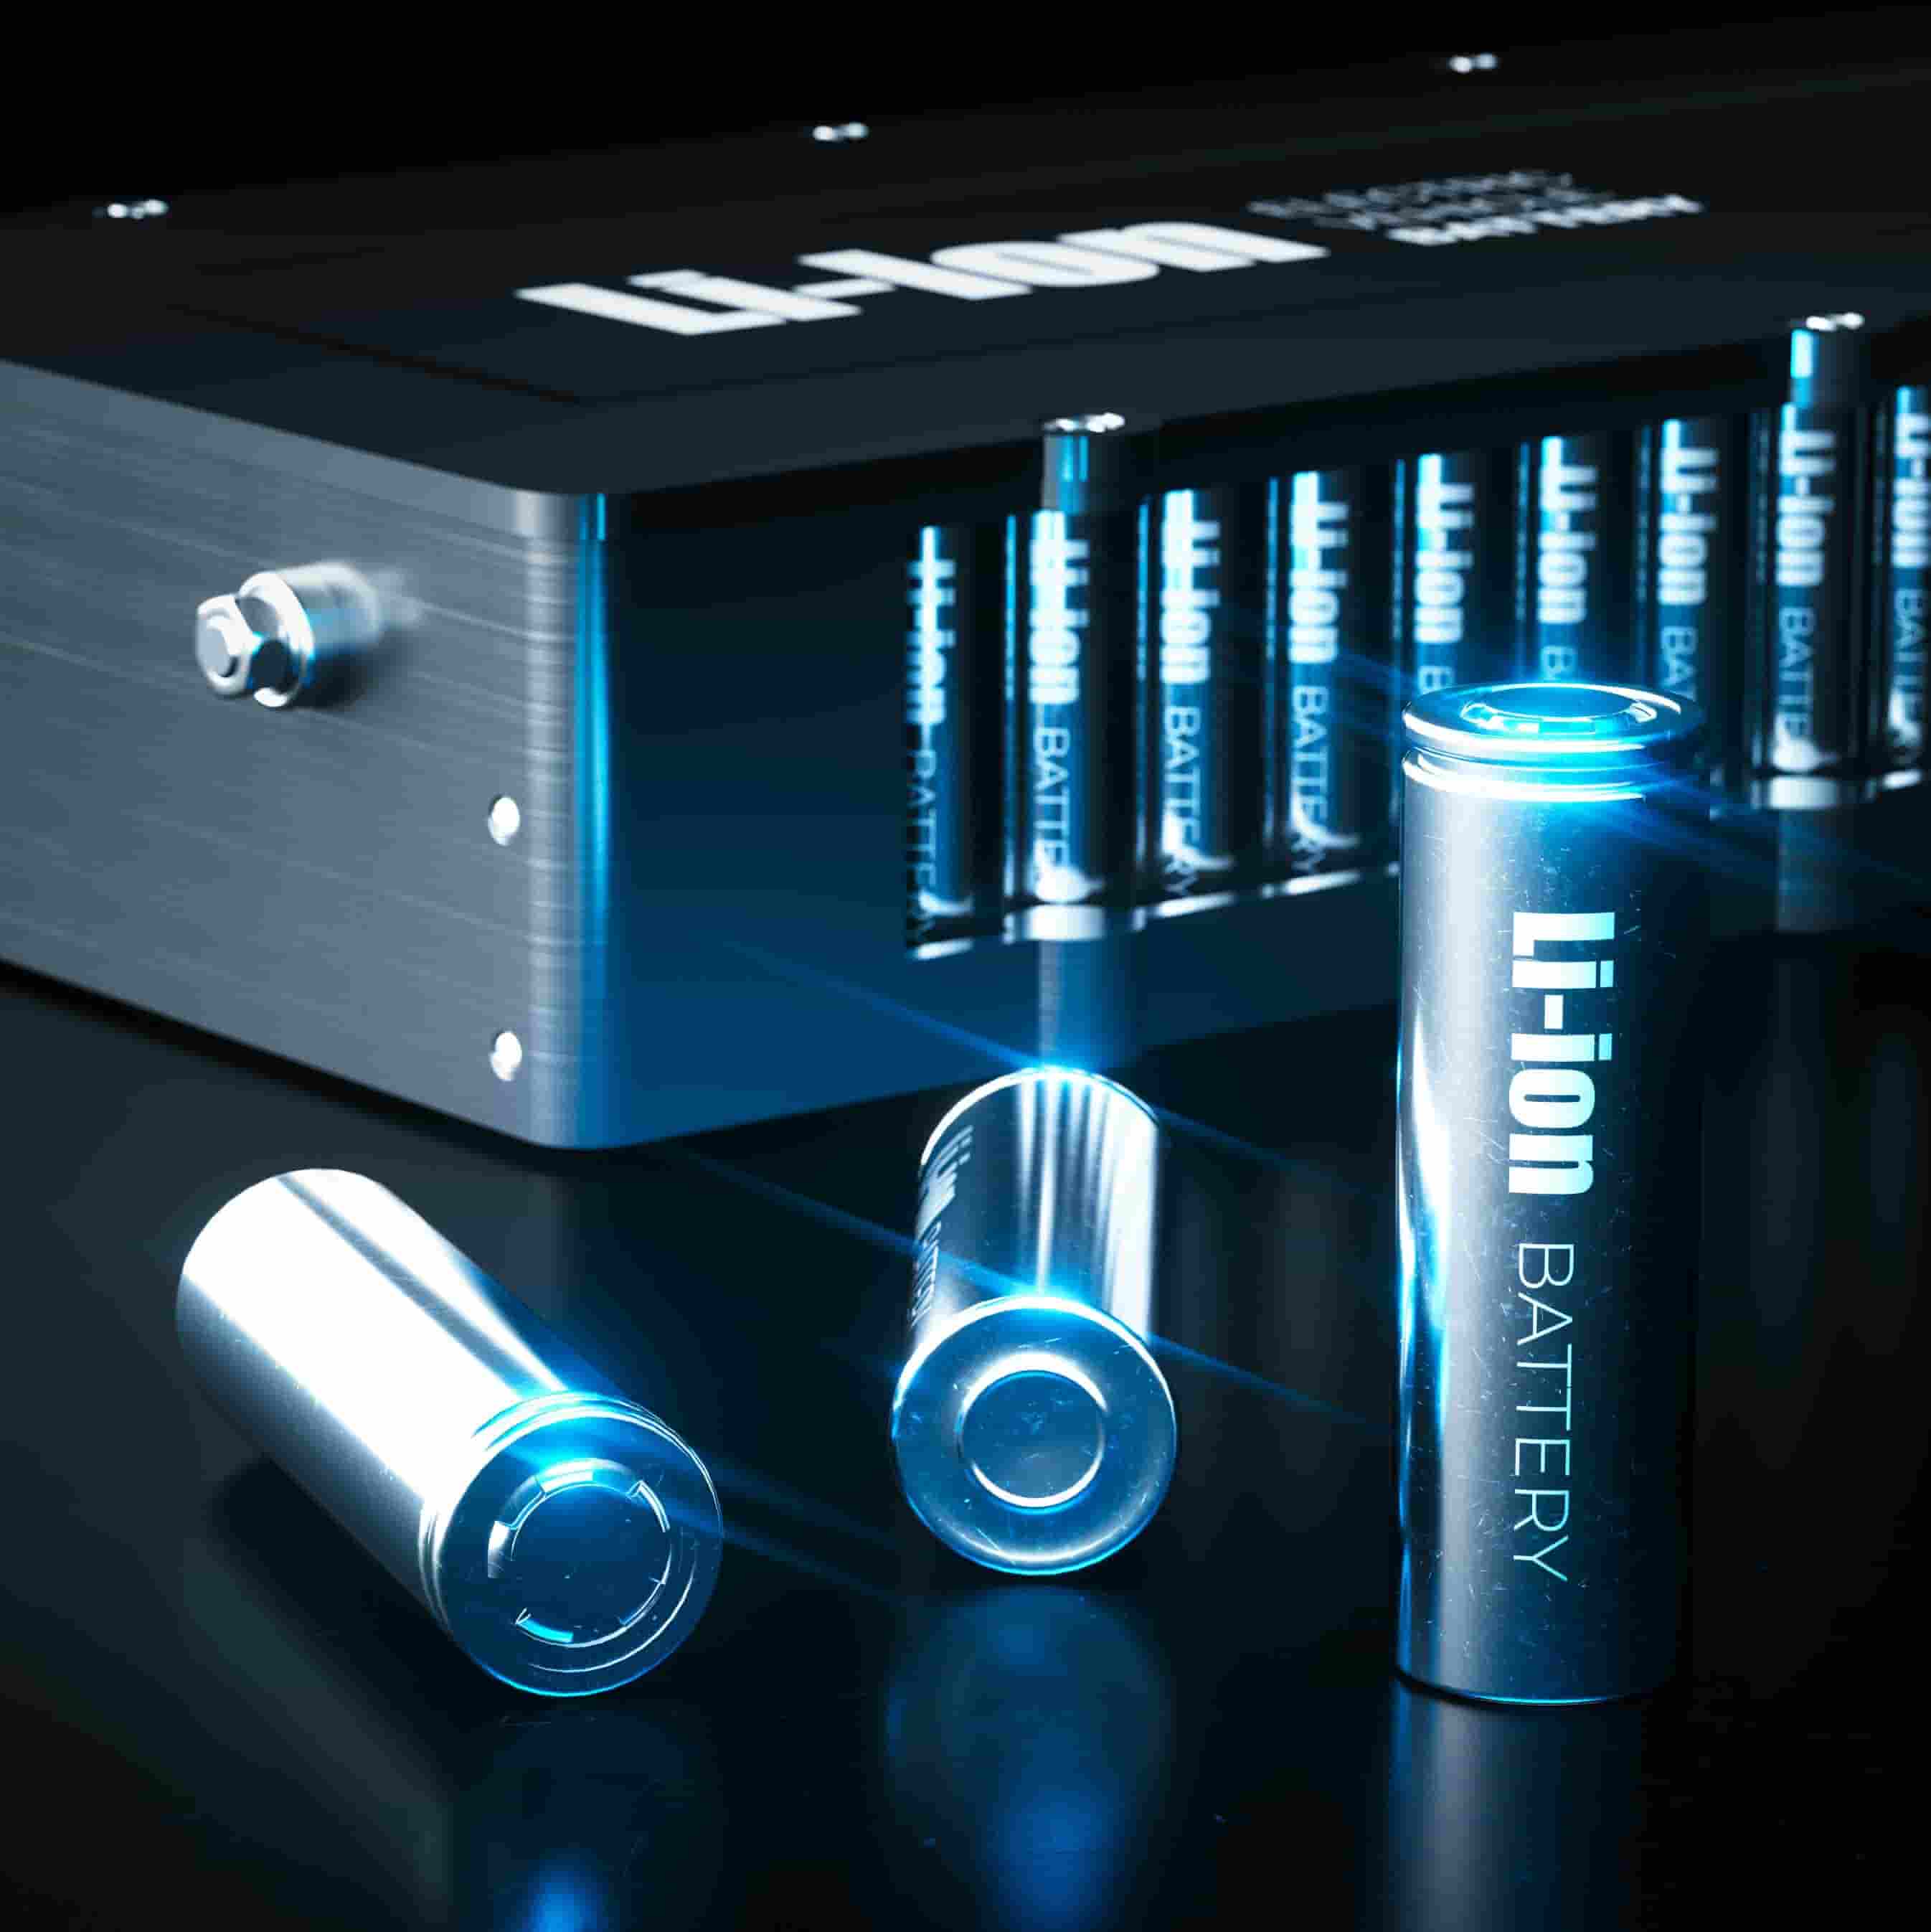 ポータブル蓄電池で使われる電池の種類は、リチウムイオン蓄電池がほとんどです。